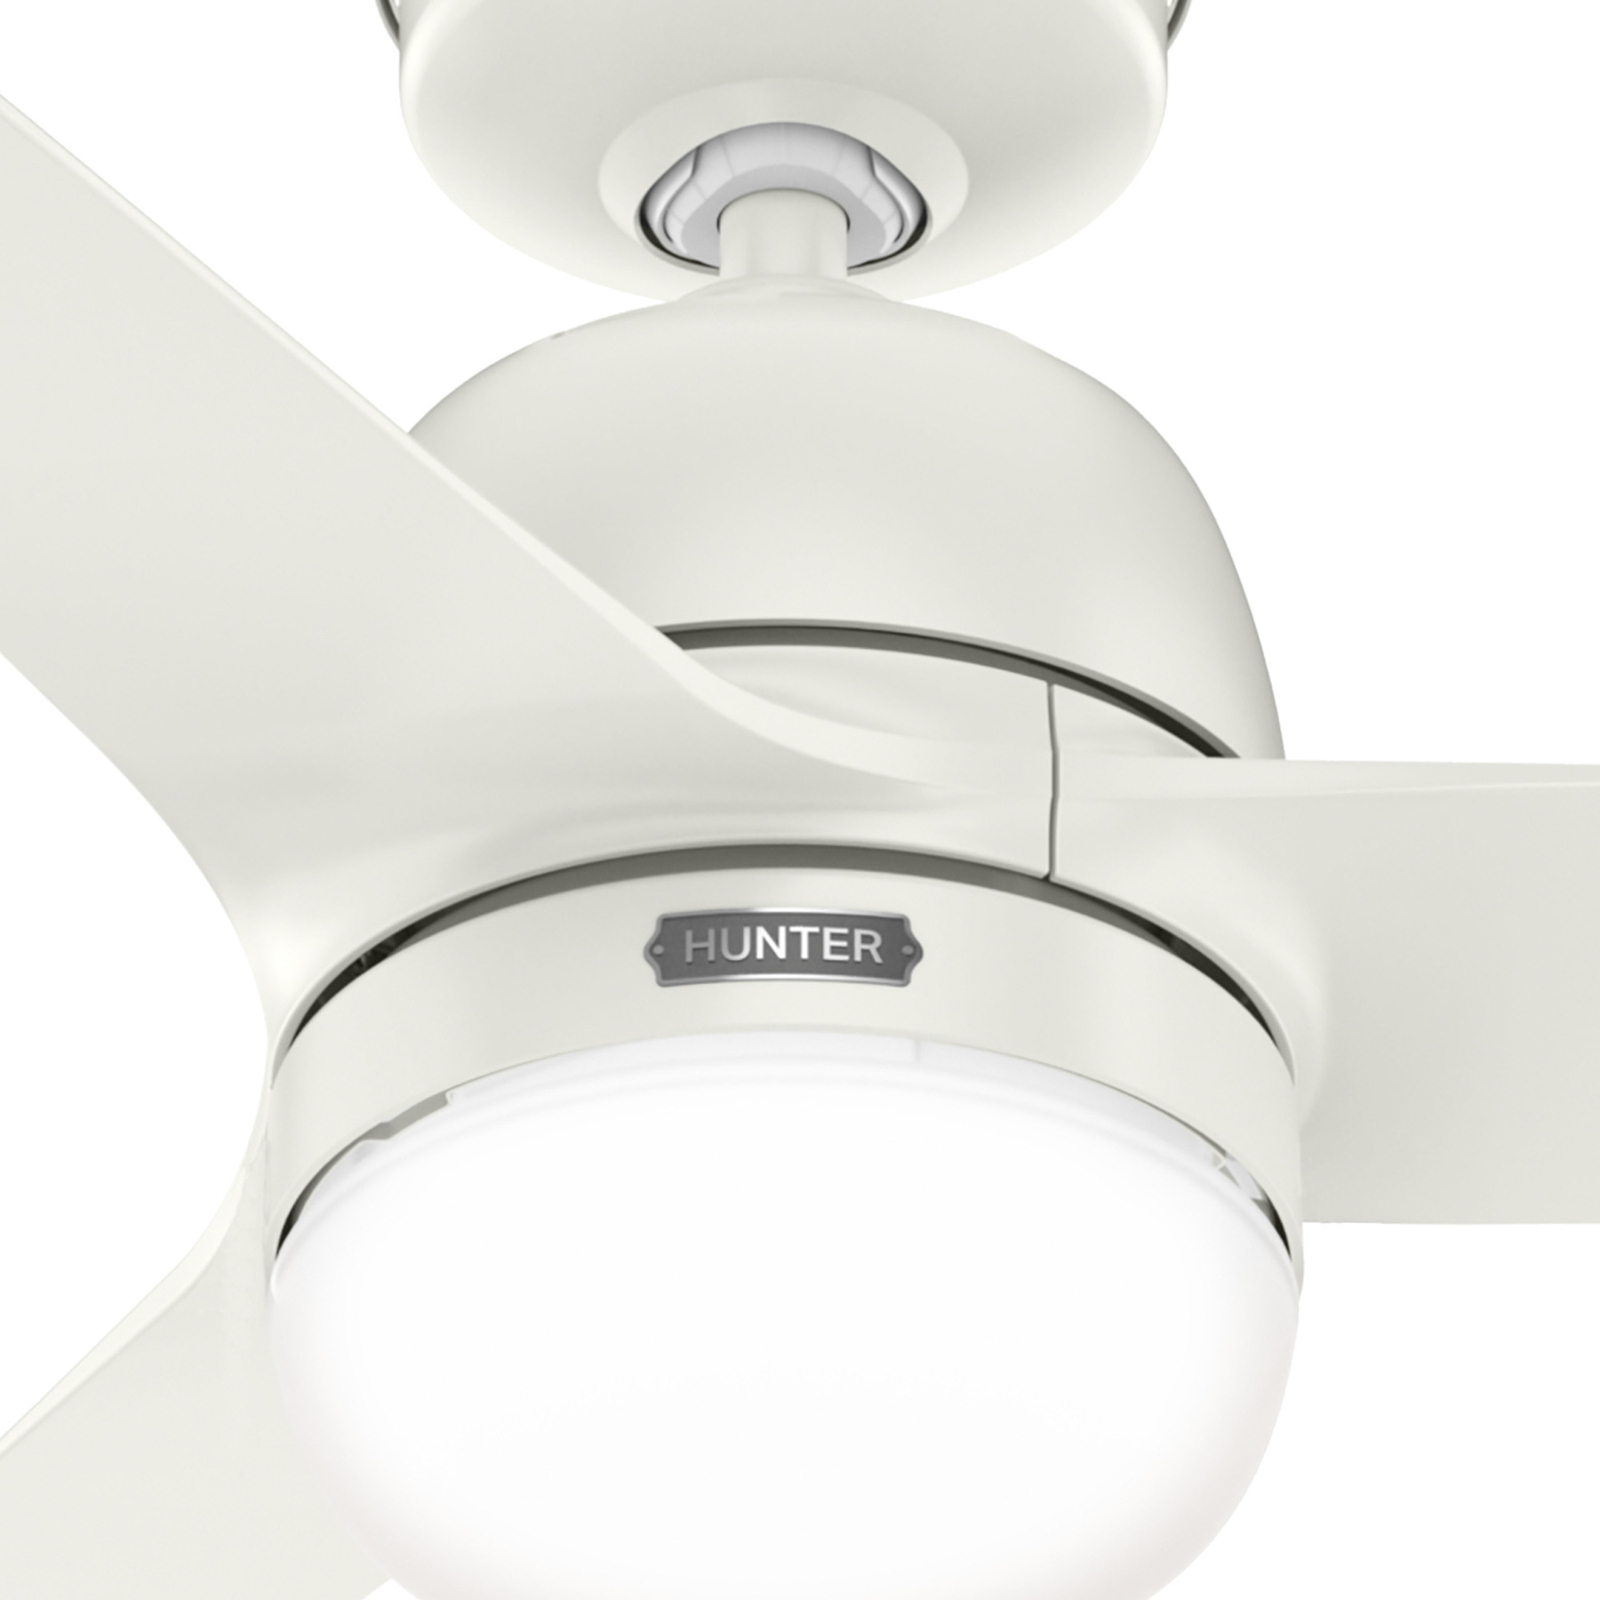 Hunter SeaWave AC ventilátor lampa IP44 biela